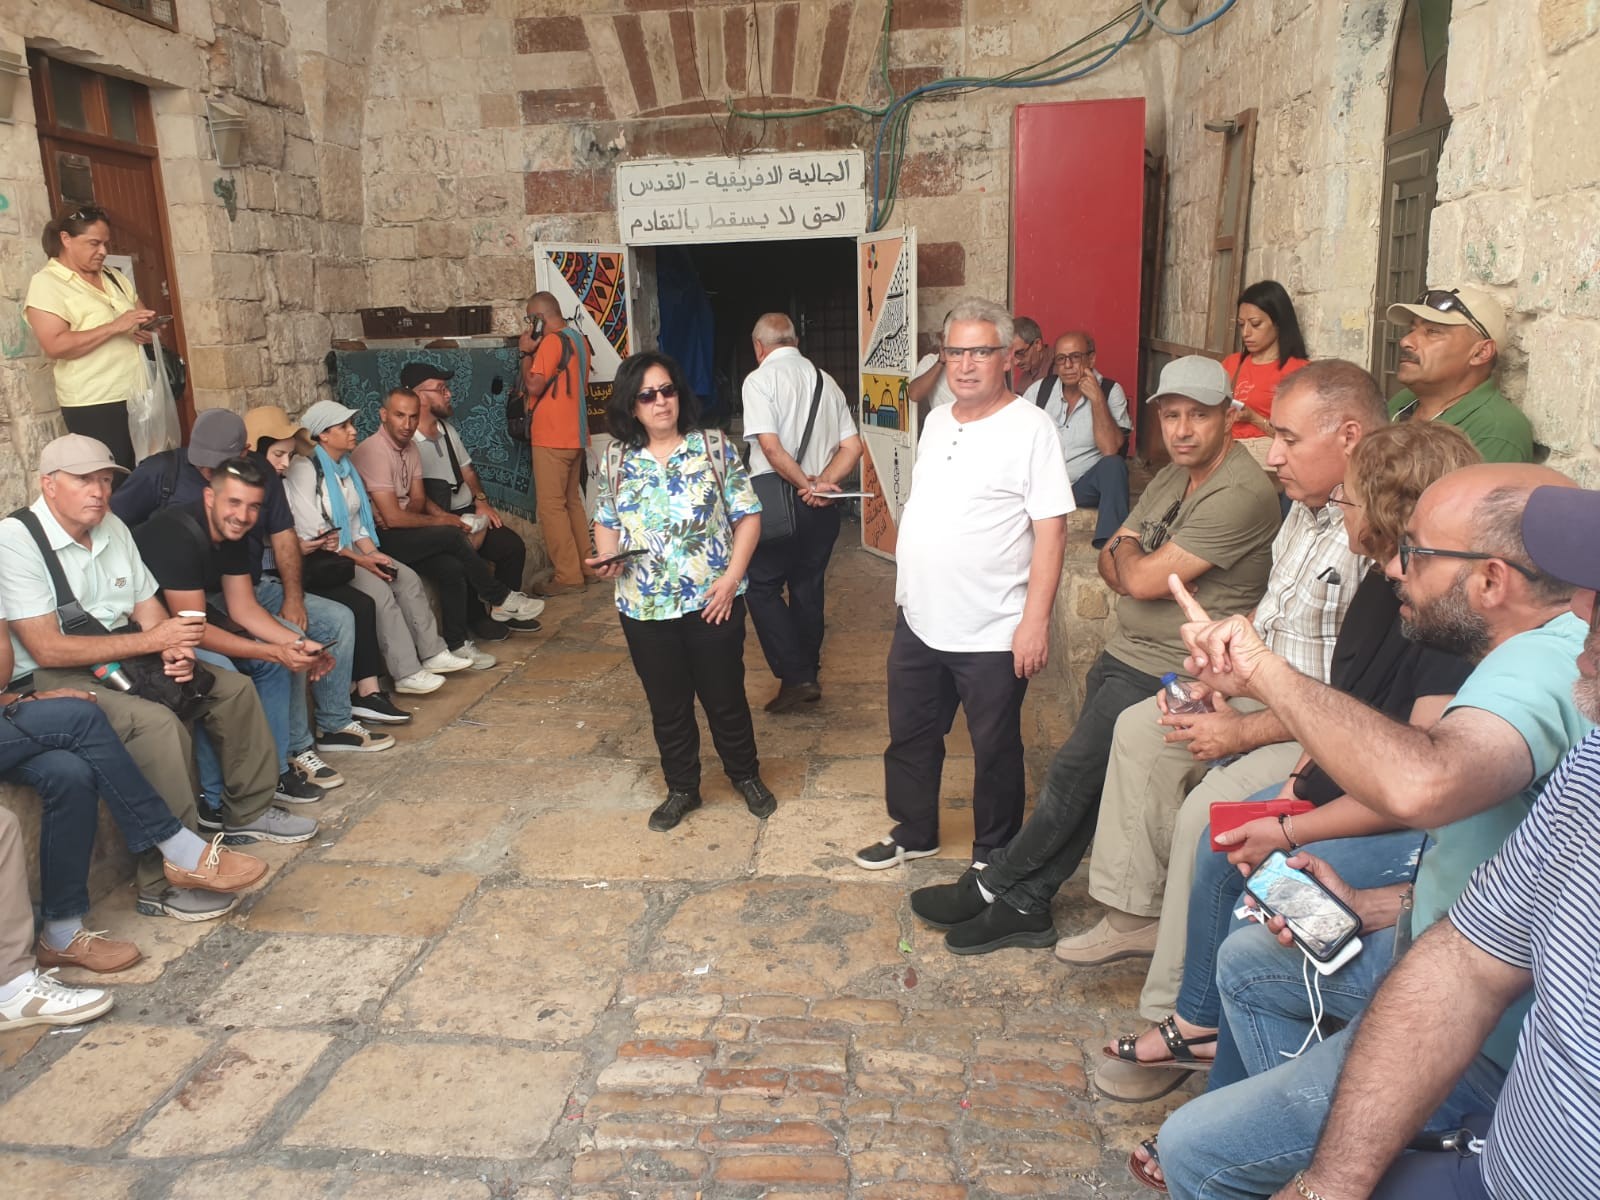 جولة ميدانية لأدلاء سياحيين فلسطينين في البلدة القديمة  1.jpeg